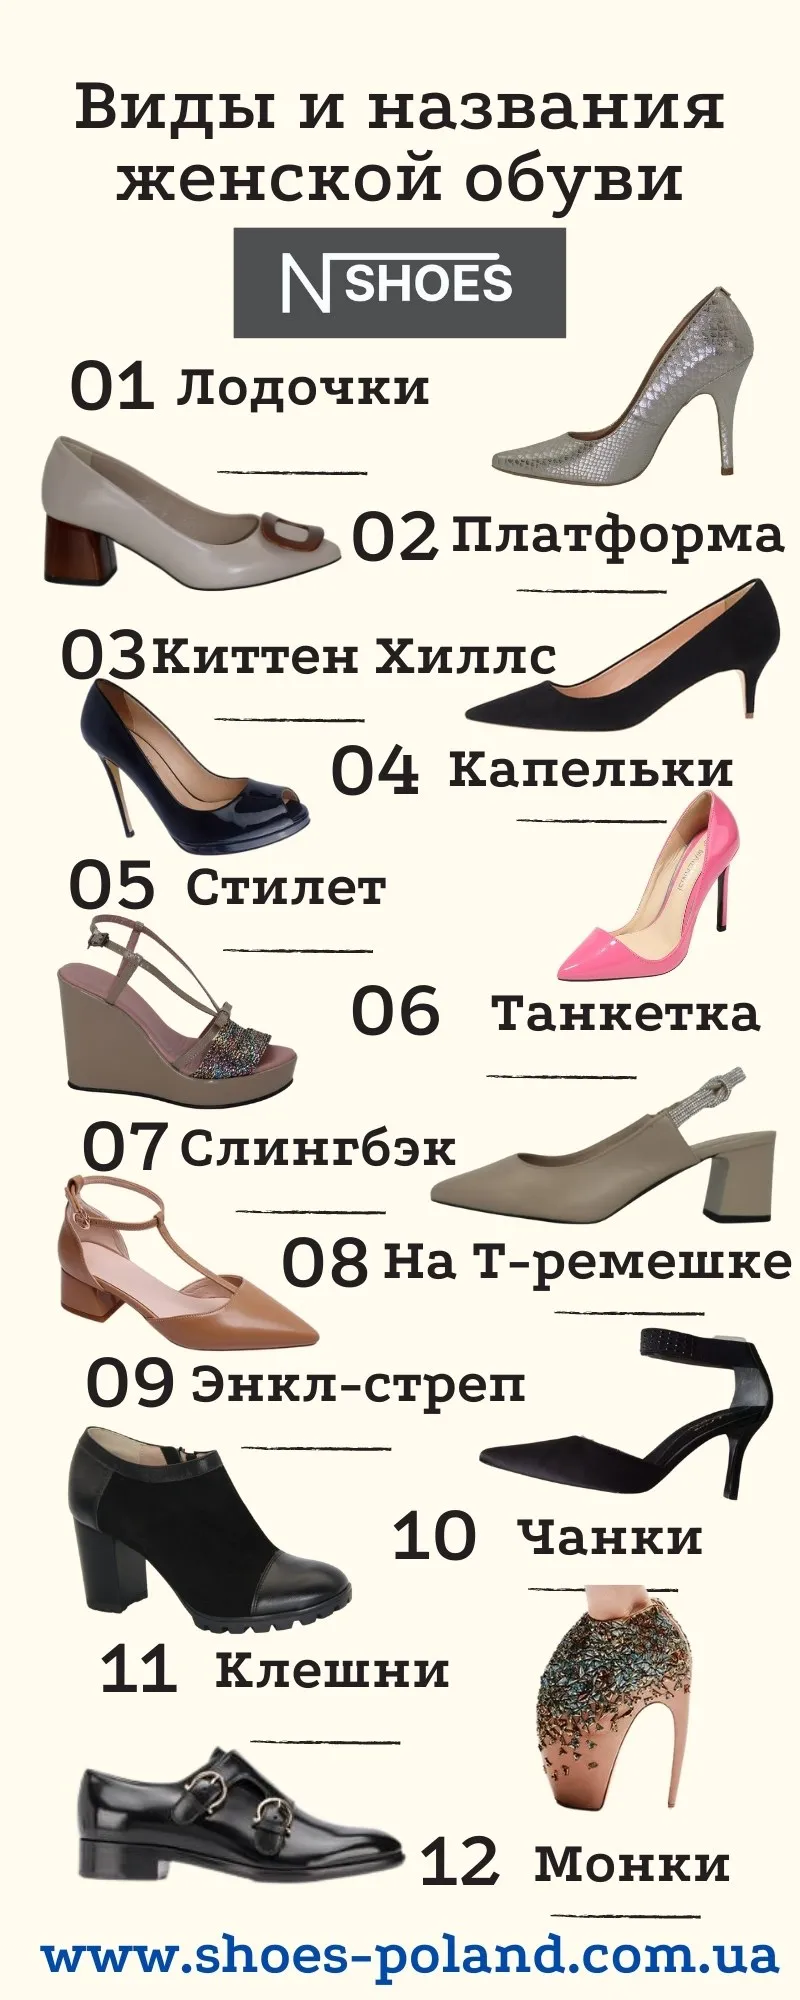 Название летней женской обуви. Женская обувь названия моделей. Типы женской обуви. Современные названия обуви. Название туфель женских.